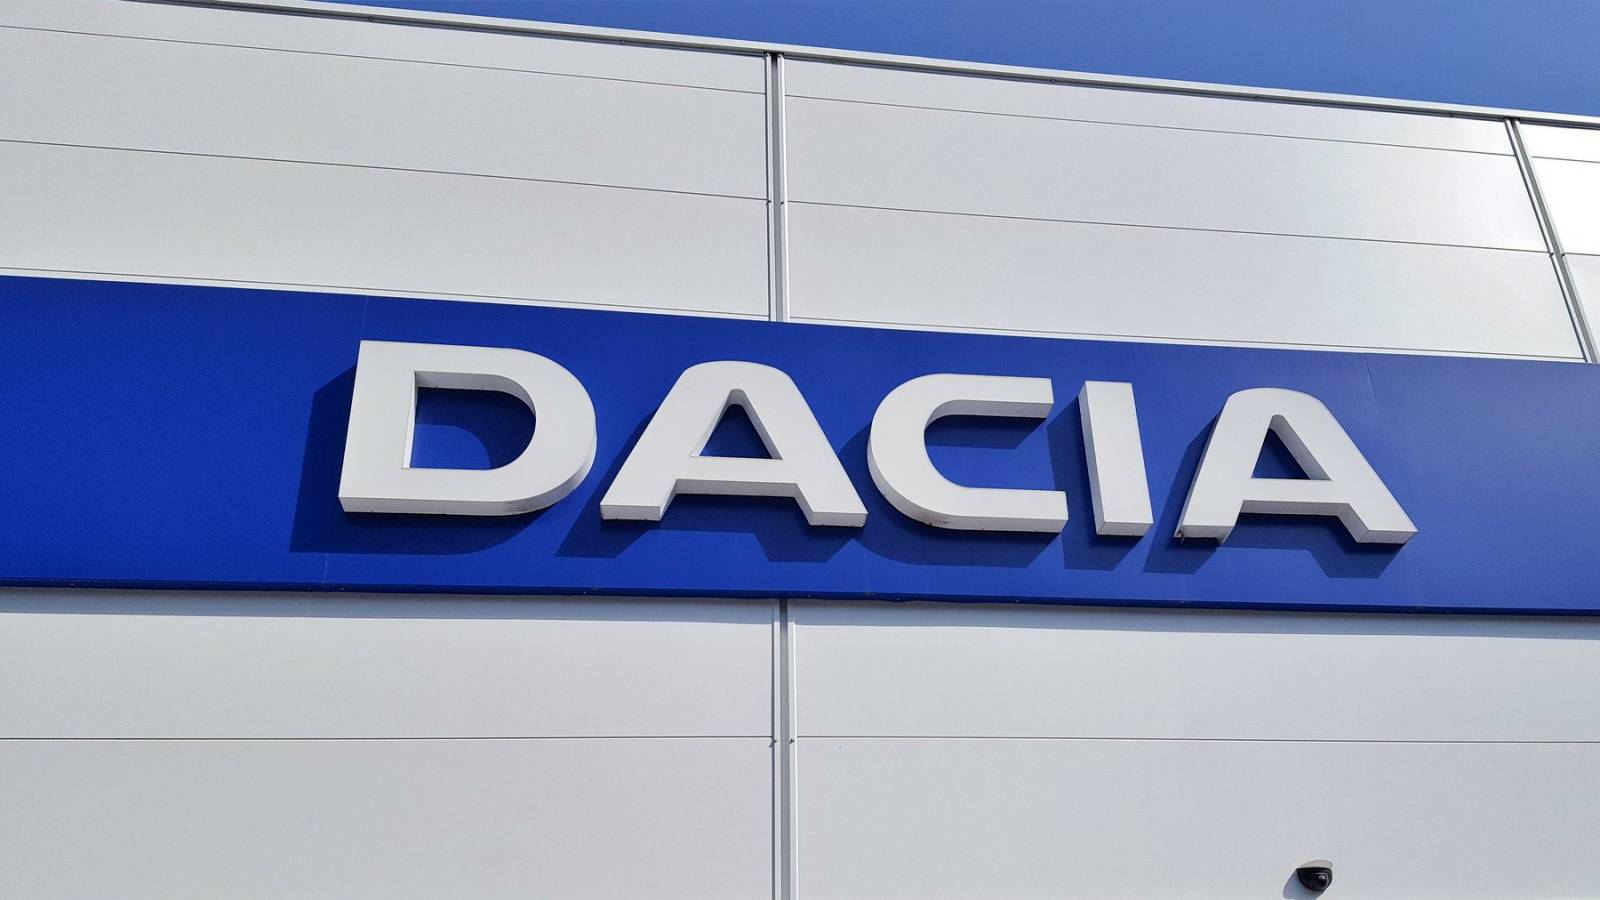 DACIA Planlægger to nye VIGTIGE biler klar til lancering